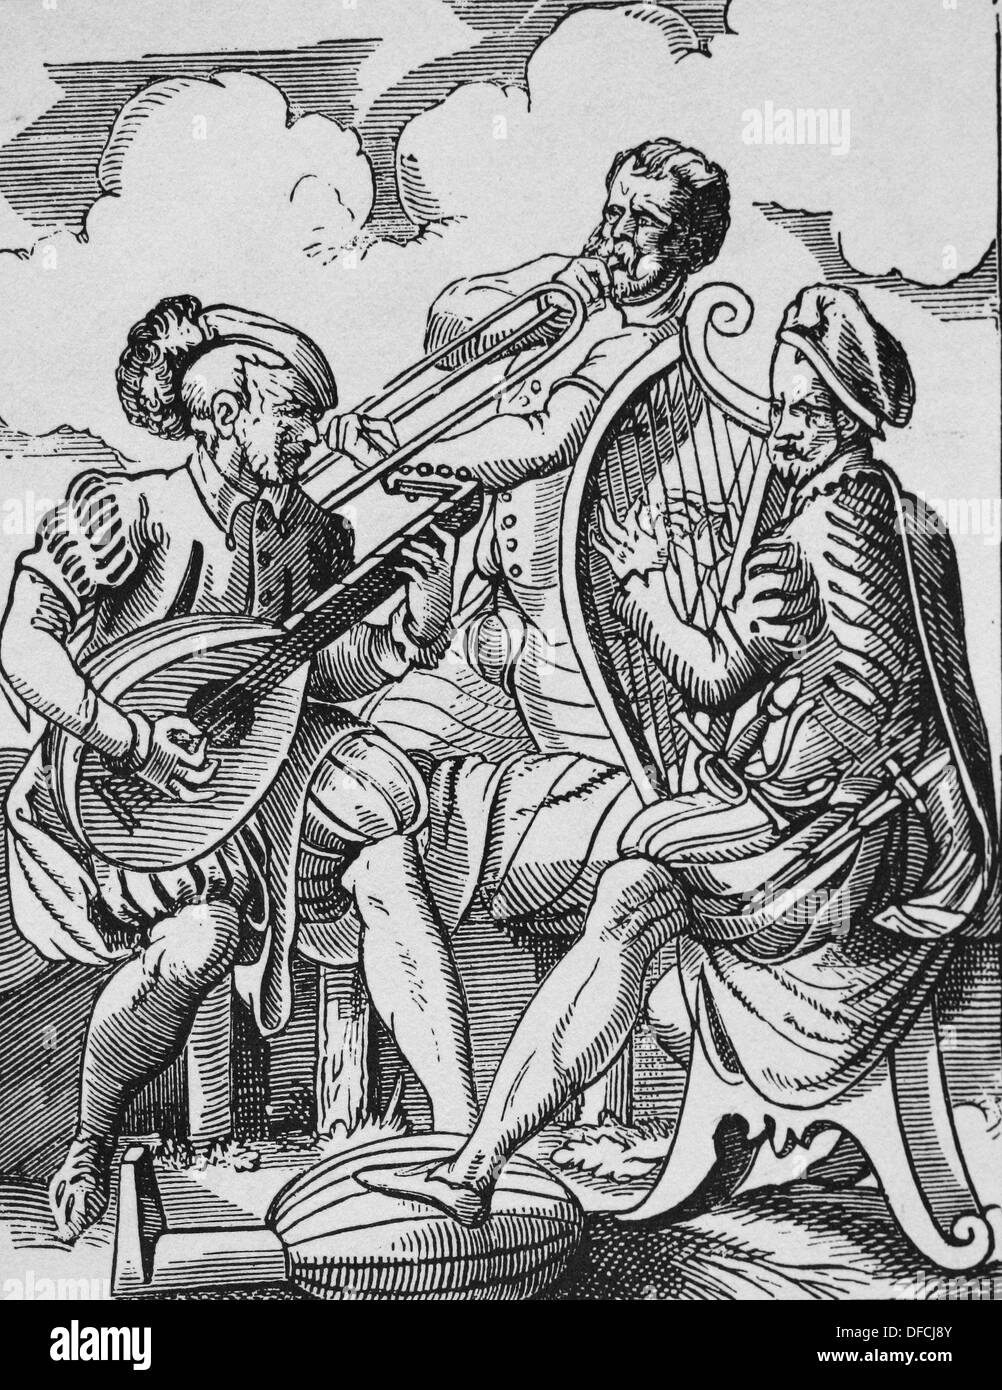 Europa. Musikgeschichte. 16. Jahrhundert. Musiker spielen verschiedene Musikinstrumente. Gravur des 19. Jahrhunderts. Stockfoto